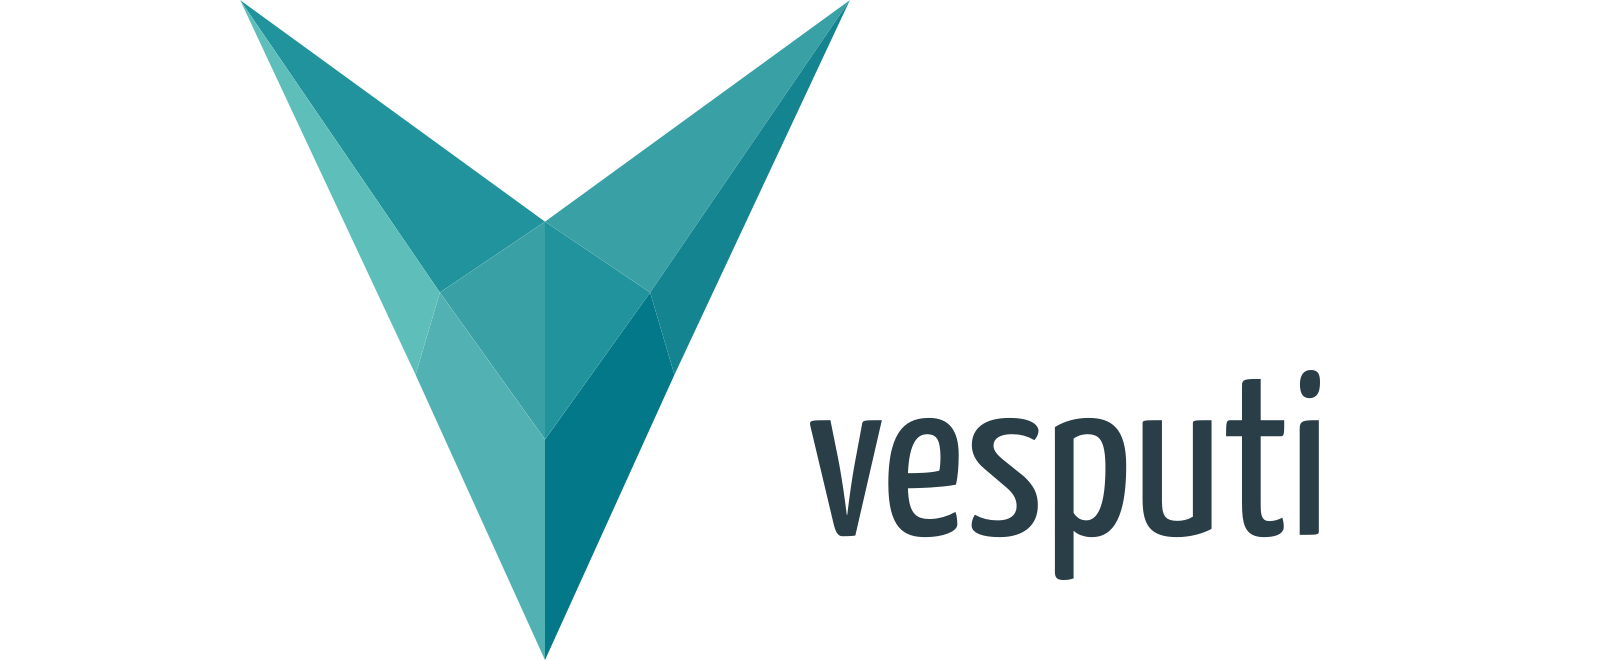 Vesputi Network Simulator and Optimizer